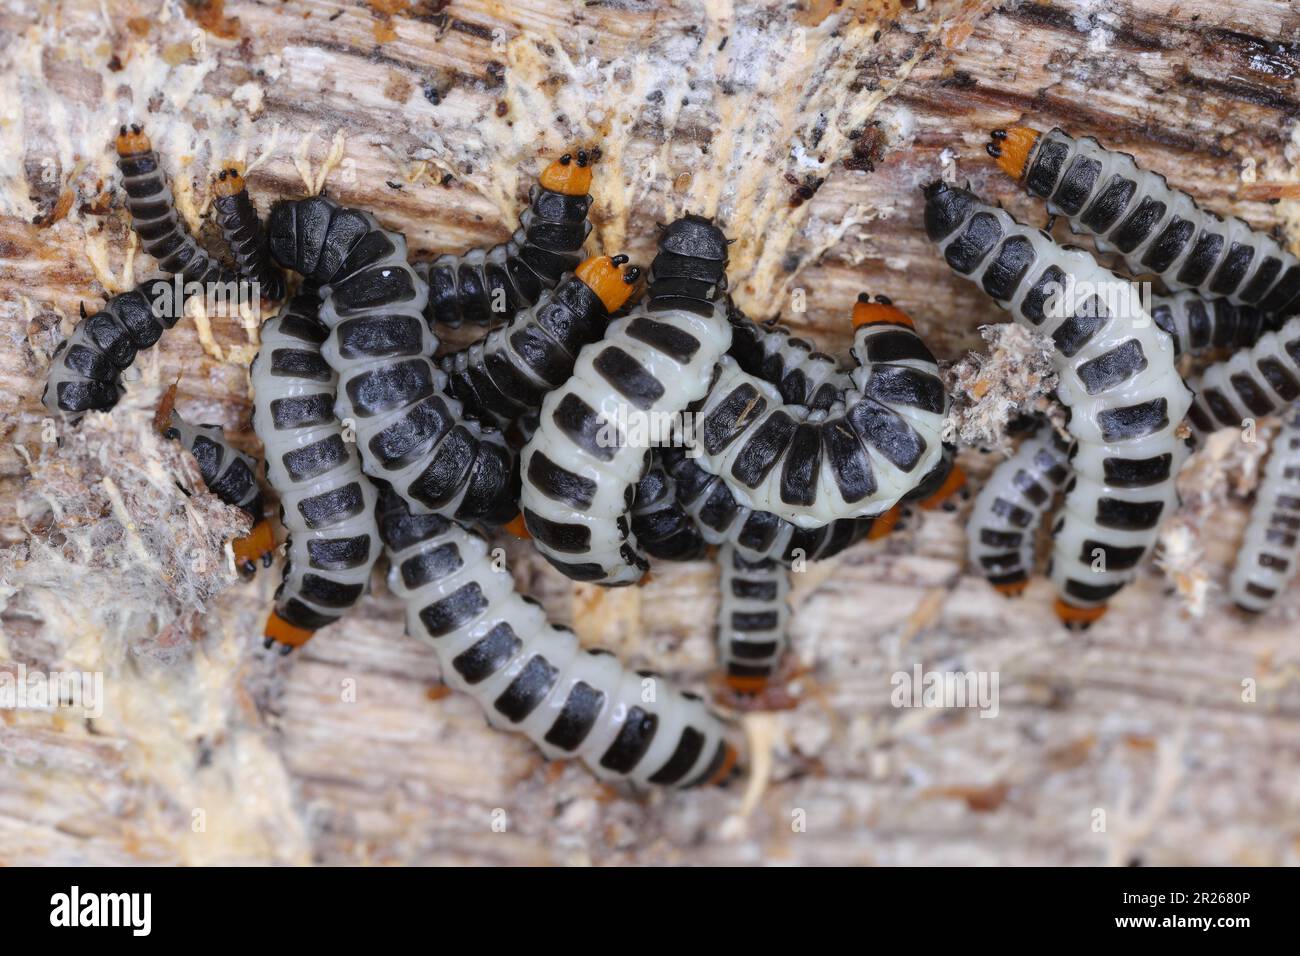 Lygistopterus sanguineus larve, larves (prédateurs) sur bois. Coléoptères ailés à filet de la famille des Lycidae. Banque D'Images